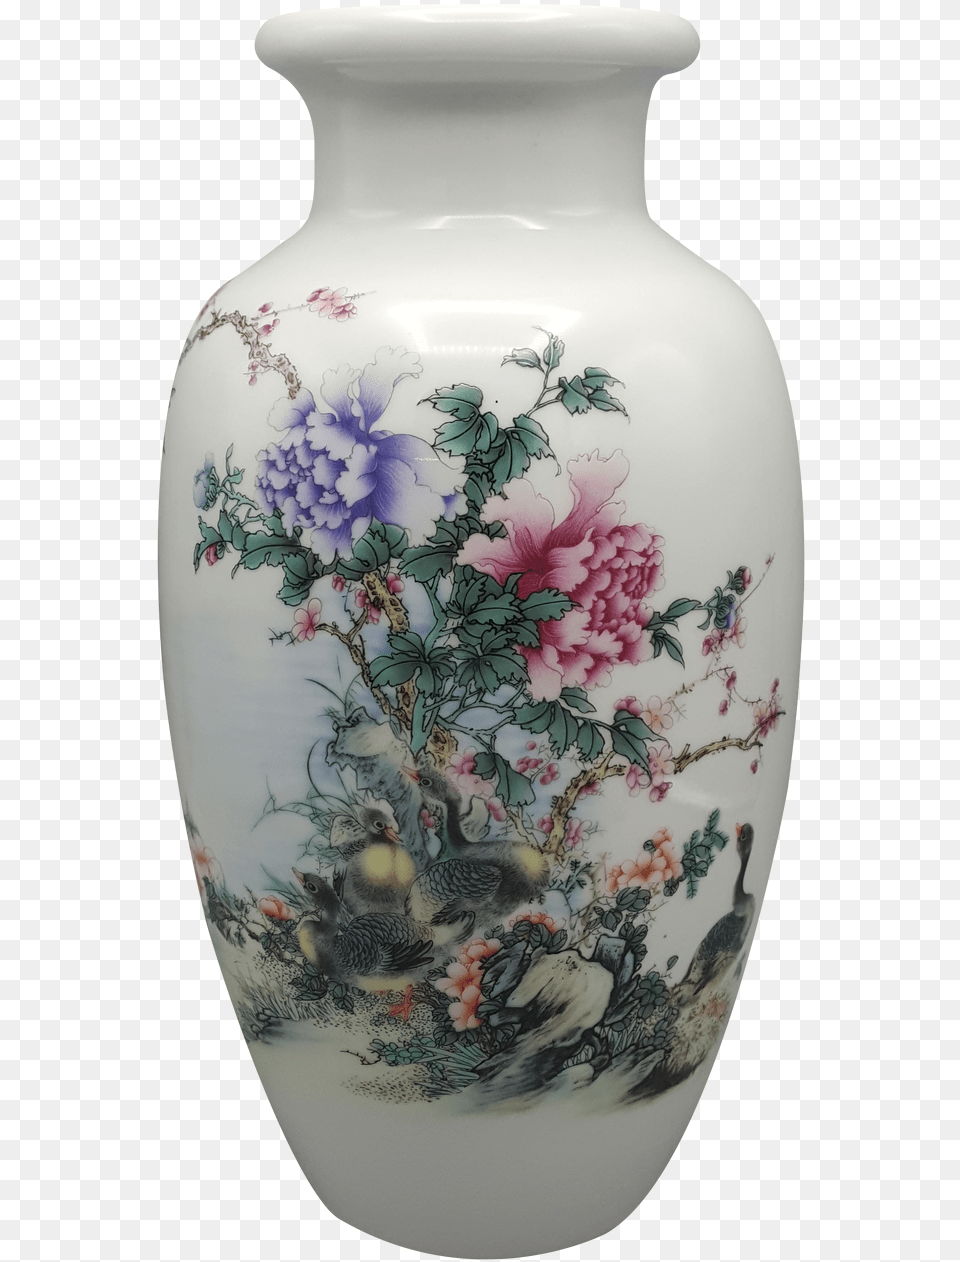 Porcelain, Art, Jar, Pottery, Vase Free Png